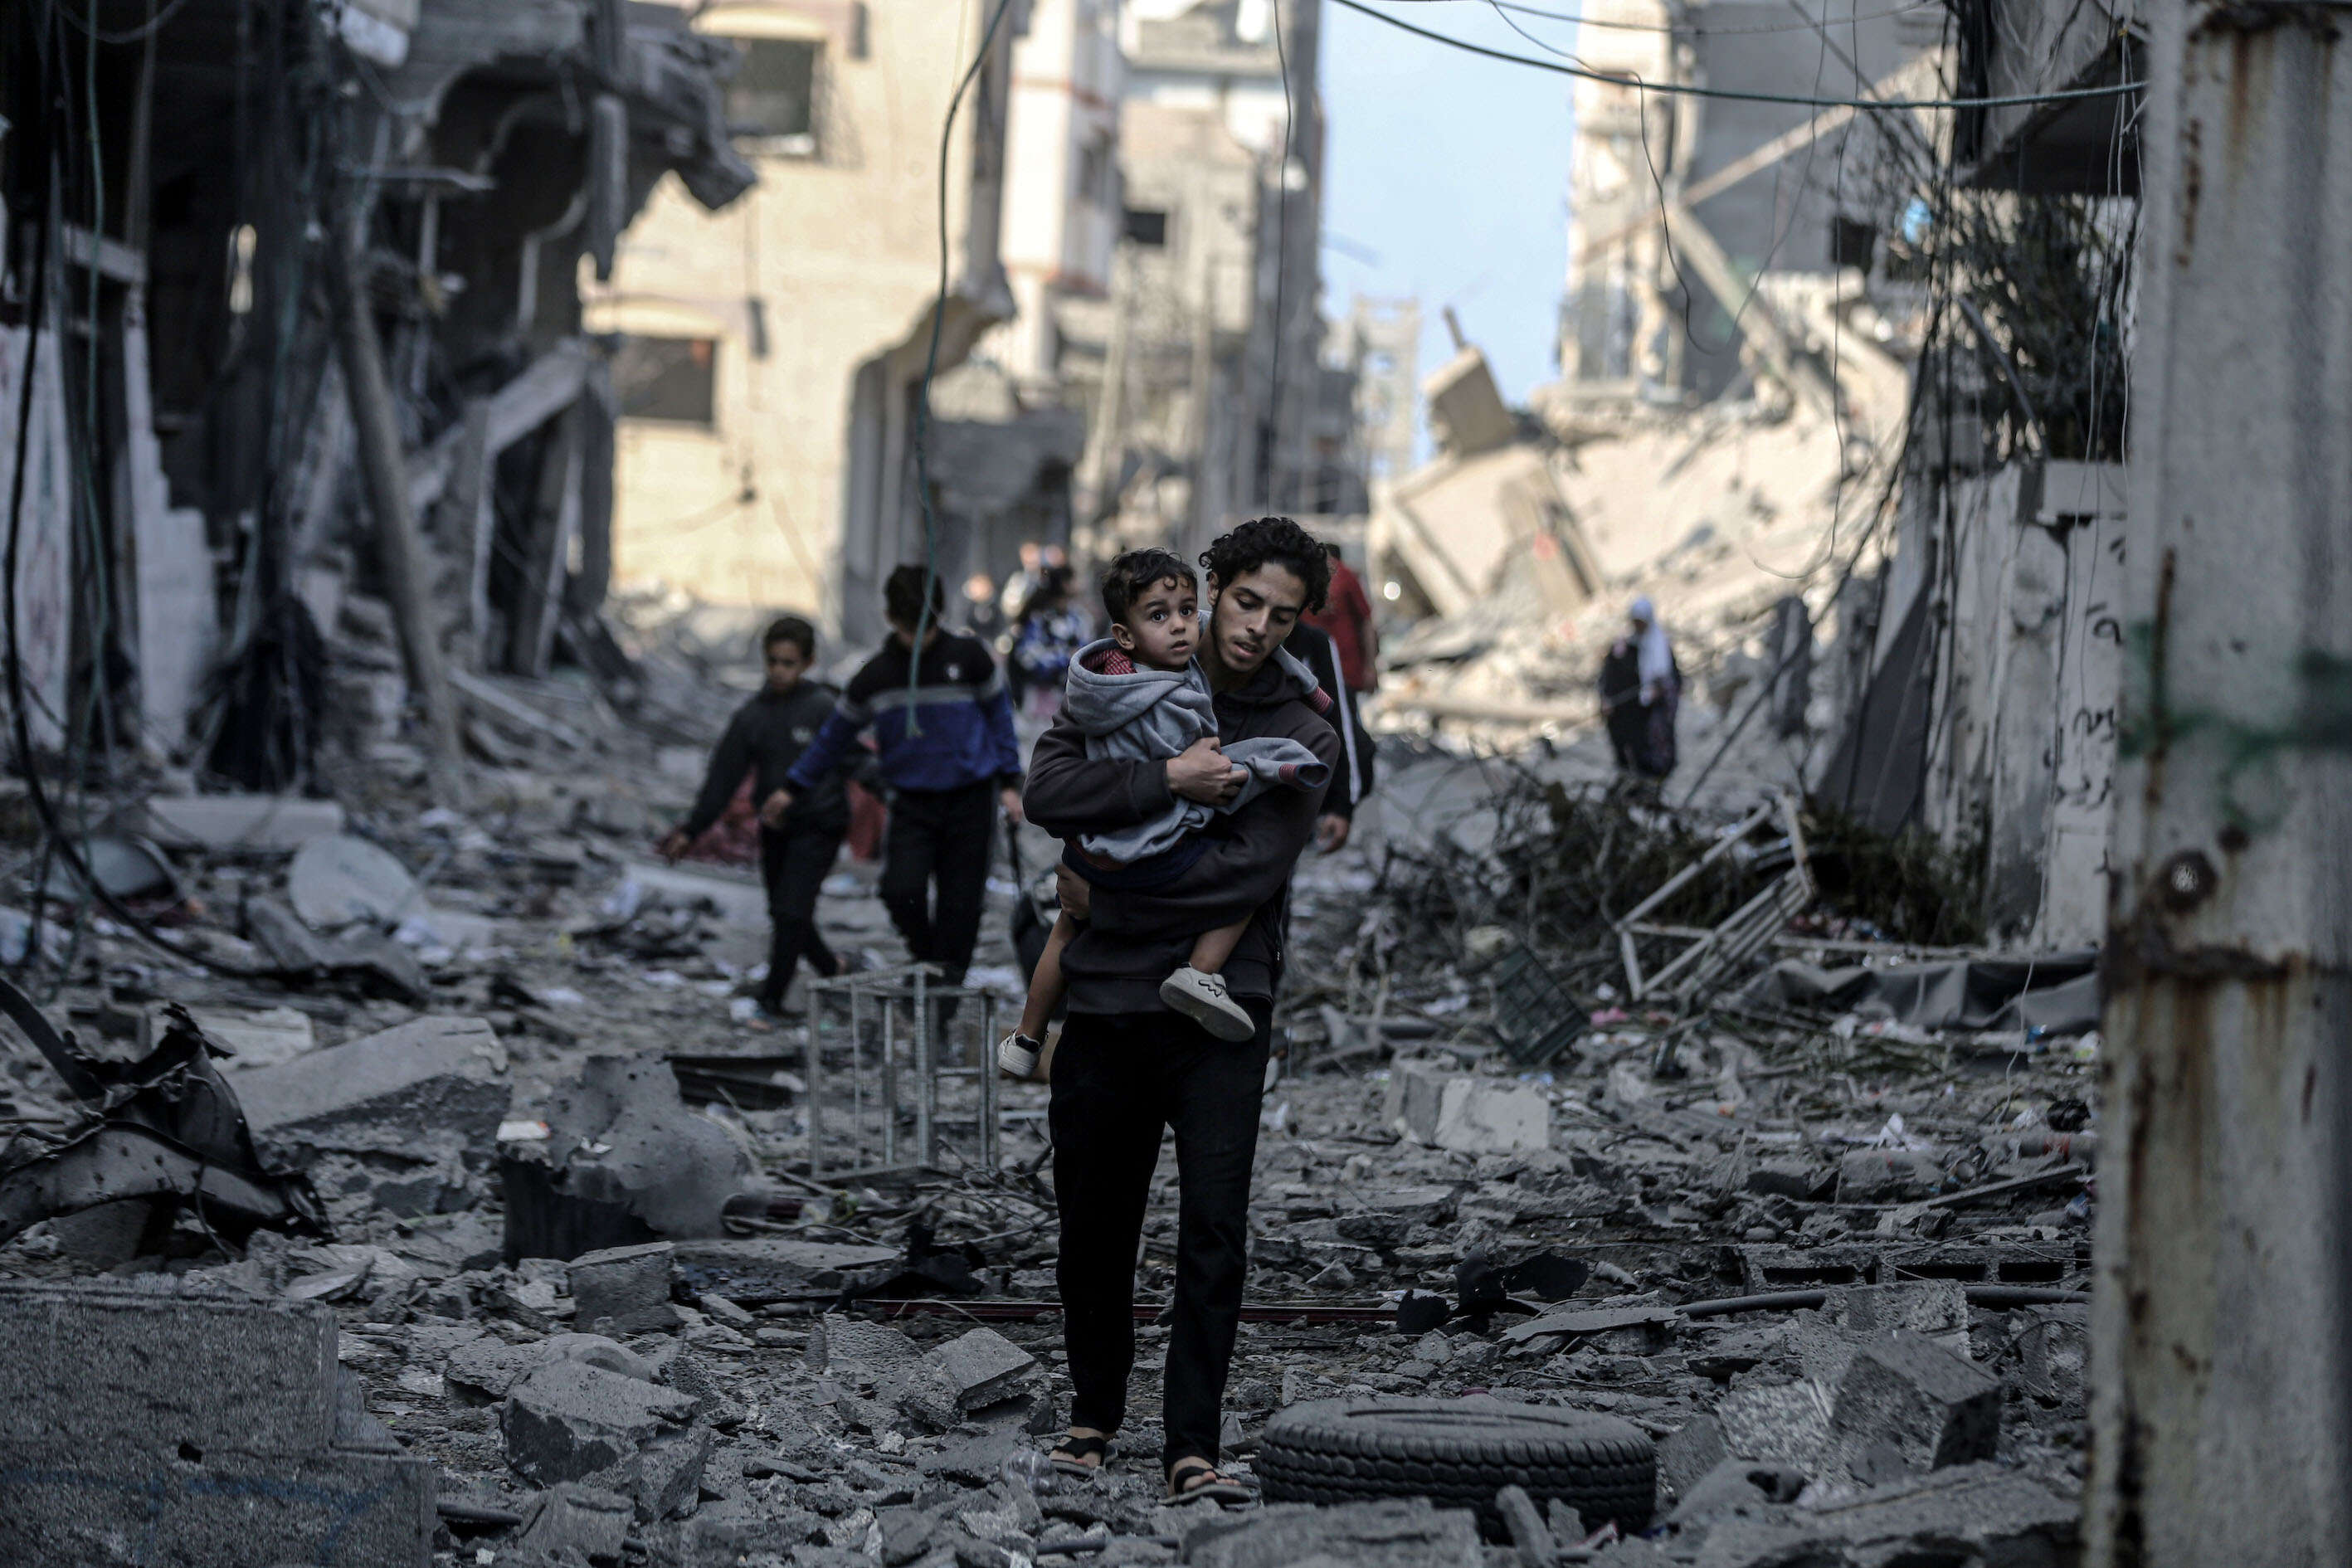 Palästinenser laufen in Gaza durch Trümmer und versuchen, sich während des Konflikts zwischen Israel und der Hamas in Sicherheit zu bringen.